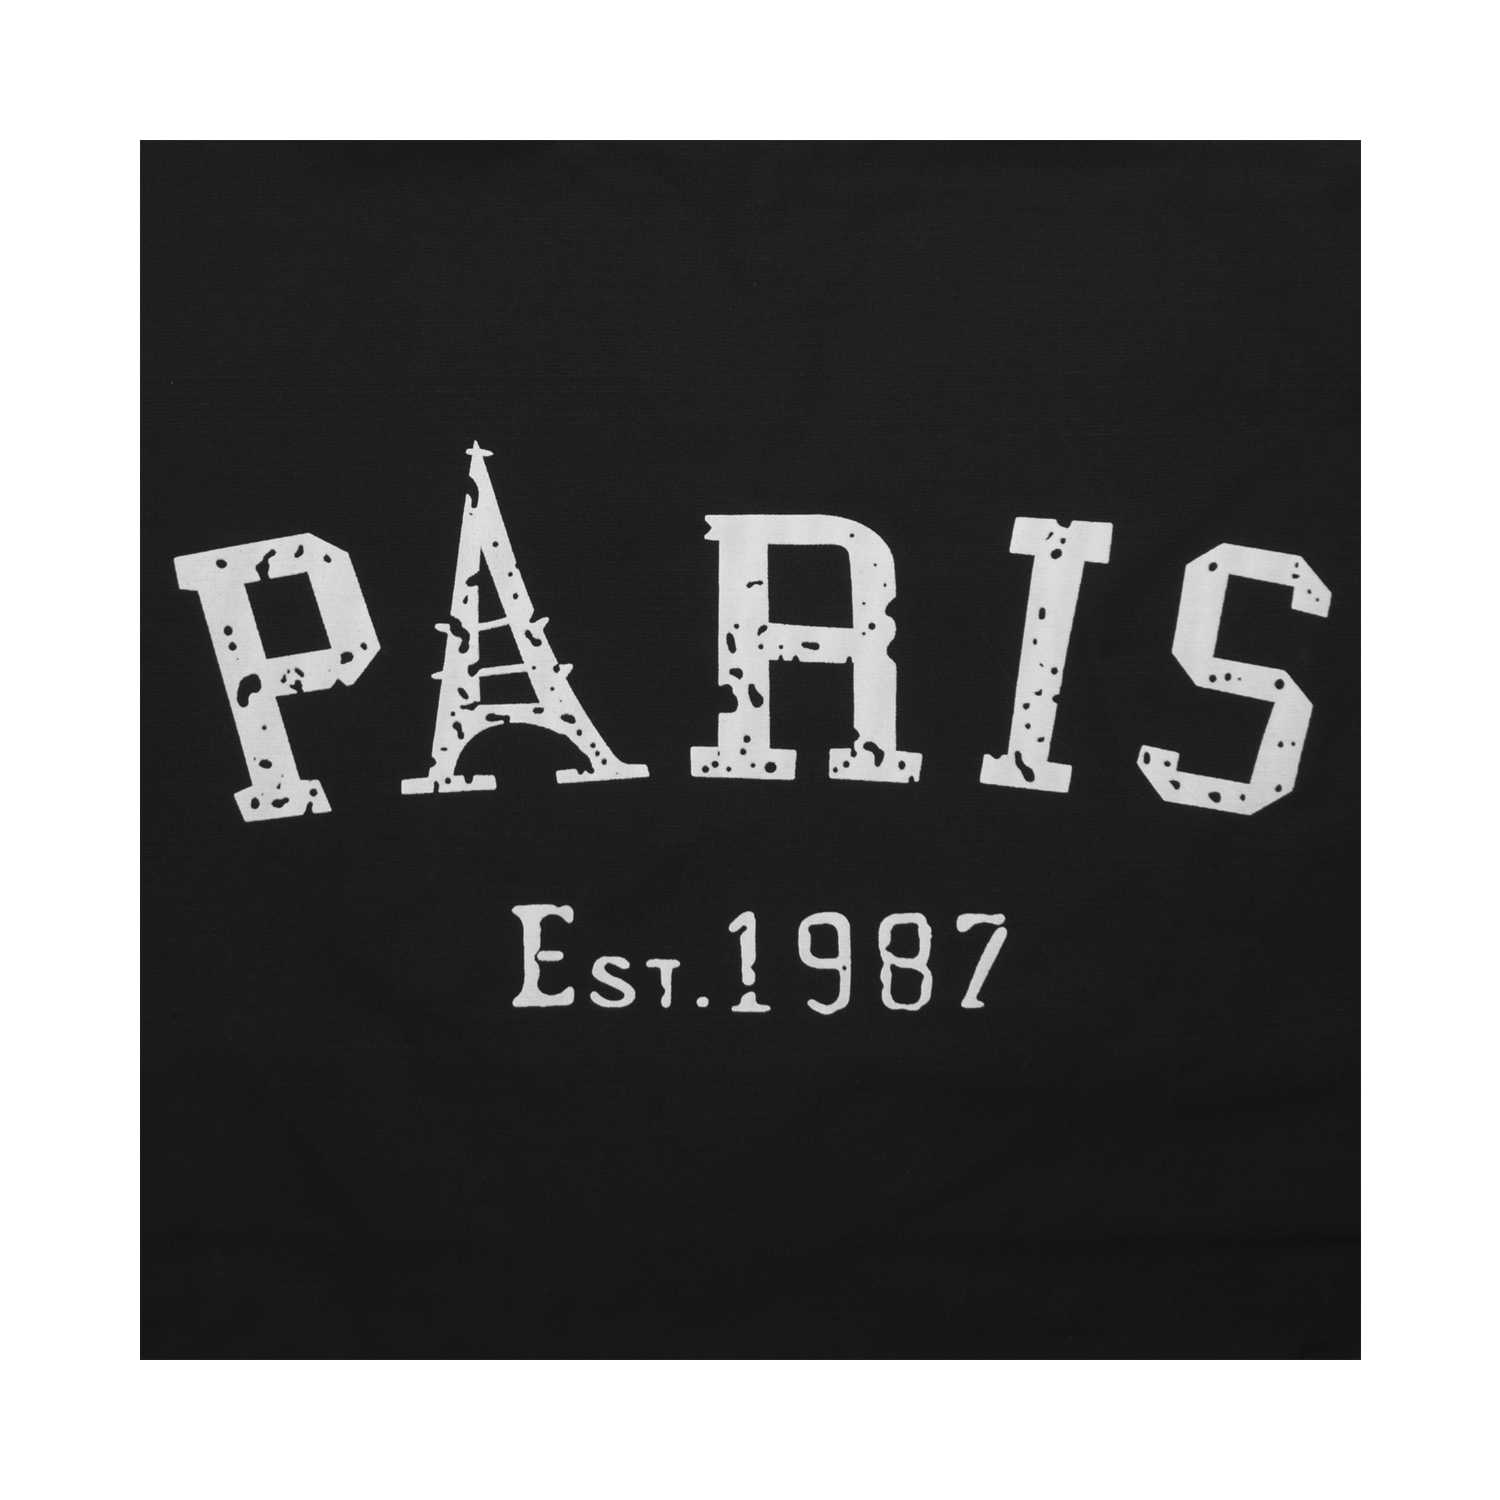 Paris Canvas Tote Bag - Black - Zestique